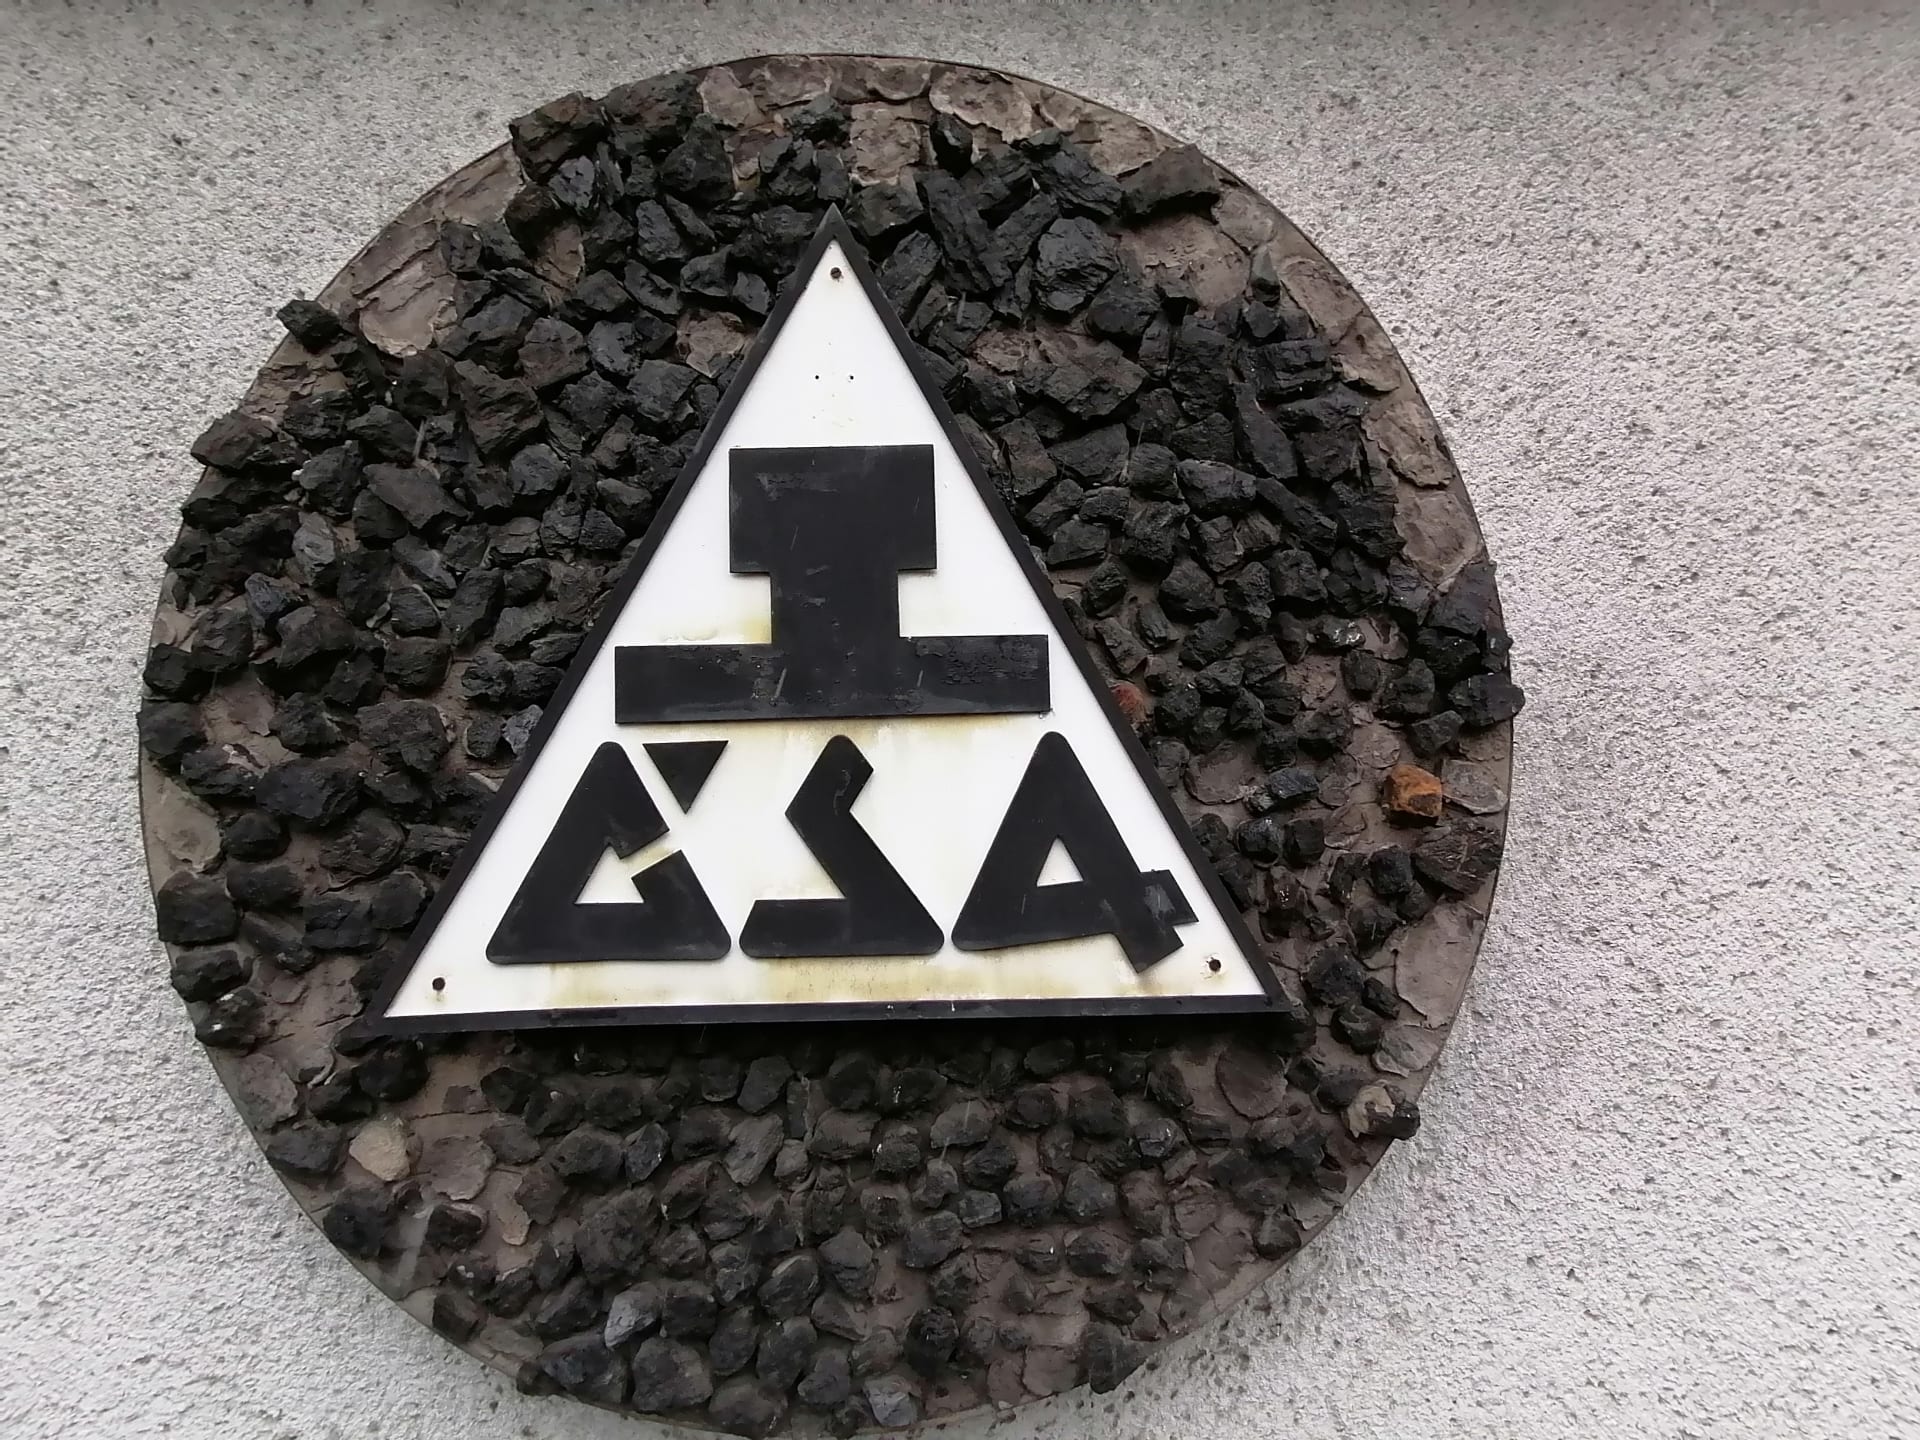 Uhlí z Dolu ČSA už se zachová jen v této uhelné mozaice, dokud nebudou zbořeny koupelny dolu, na kterých mozaika visí.